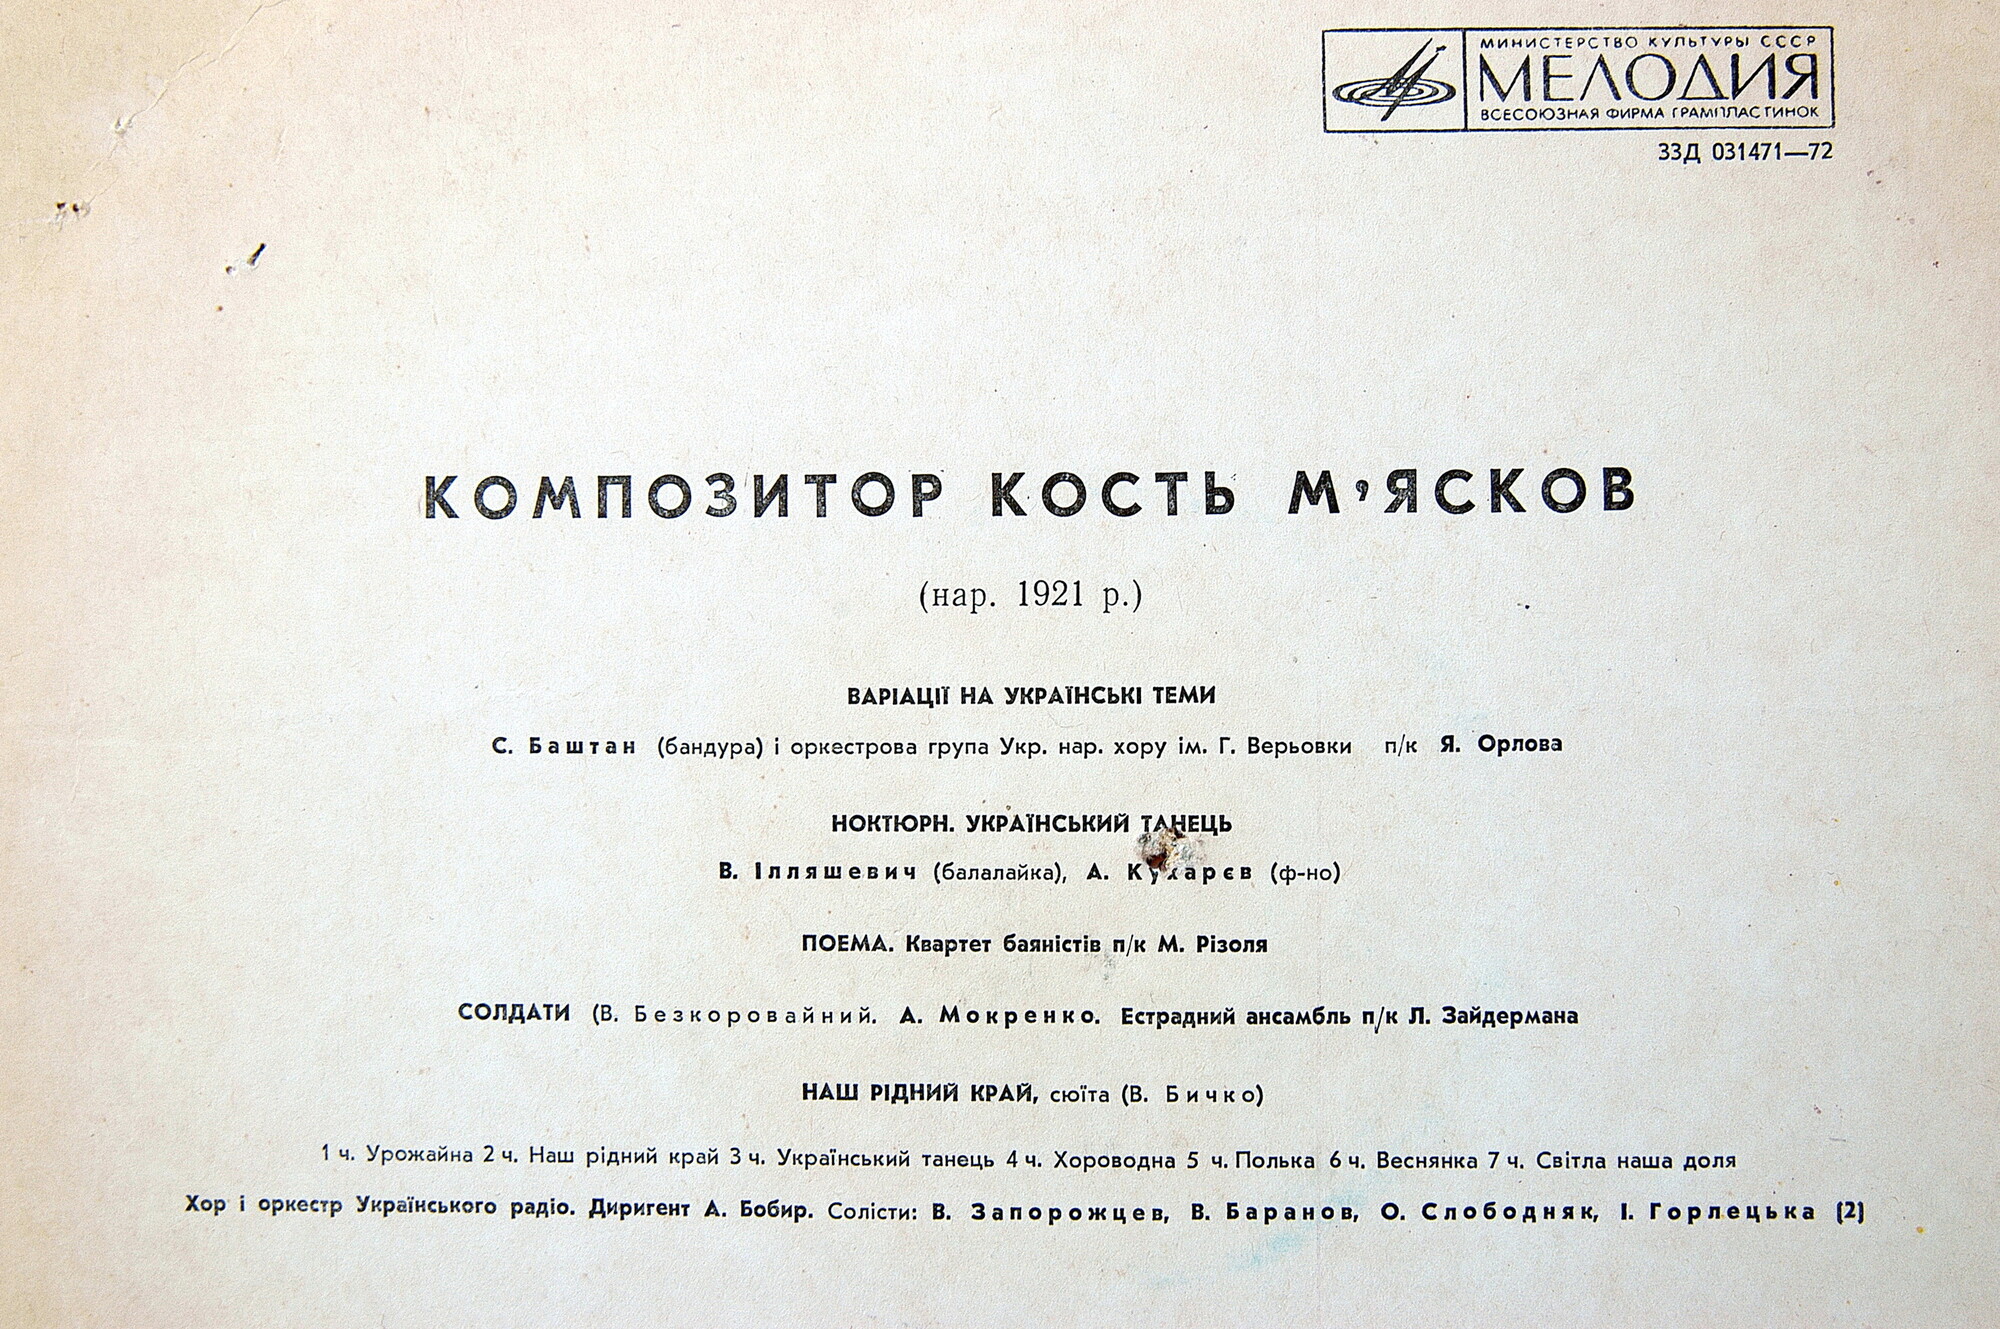 К. МЯСКОВ (1921) - песни и музыка